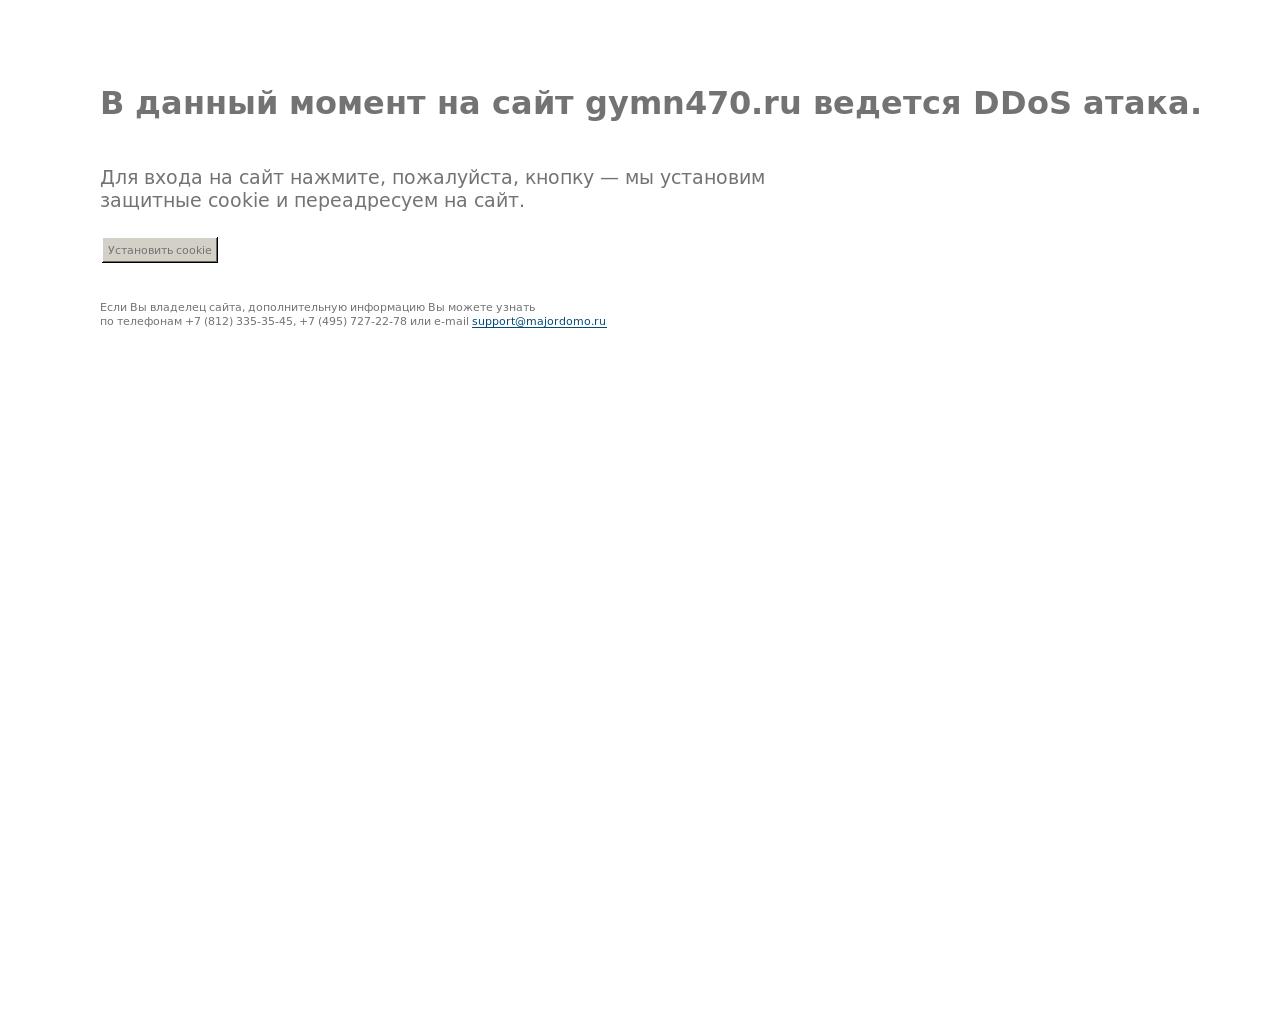 Изображение сайта gymn470.ru в разрешении 1280x1024